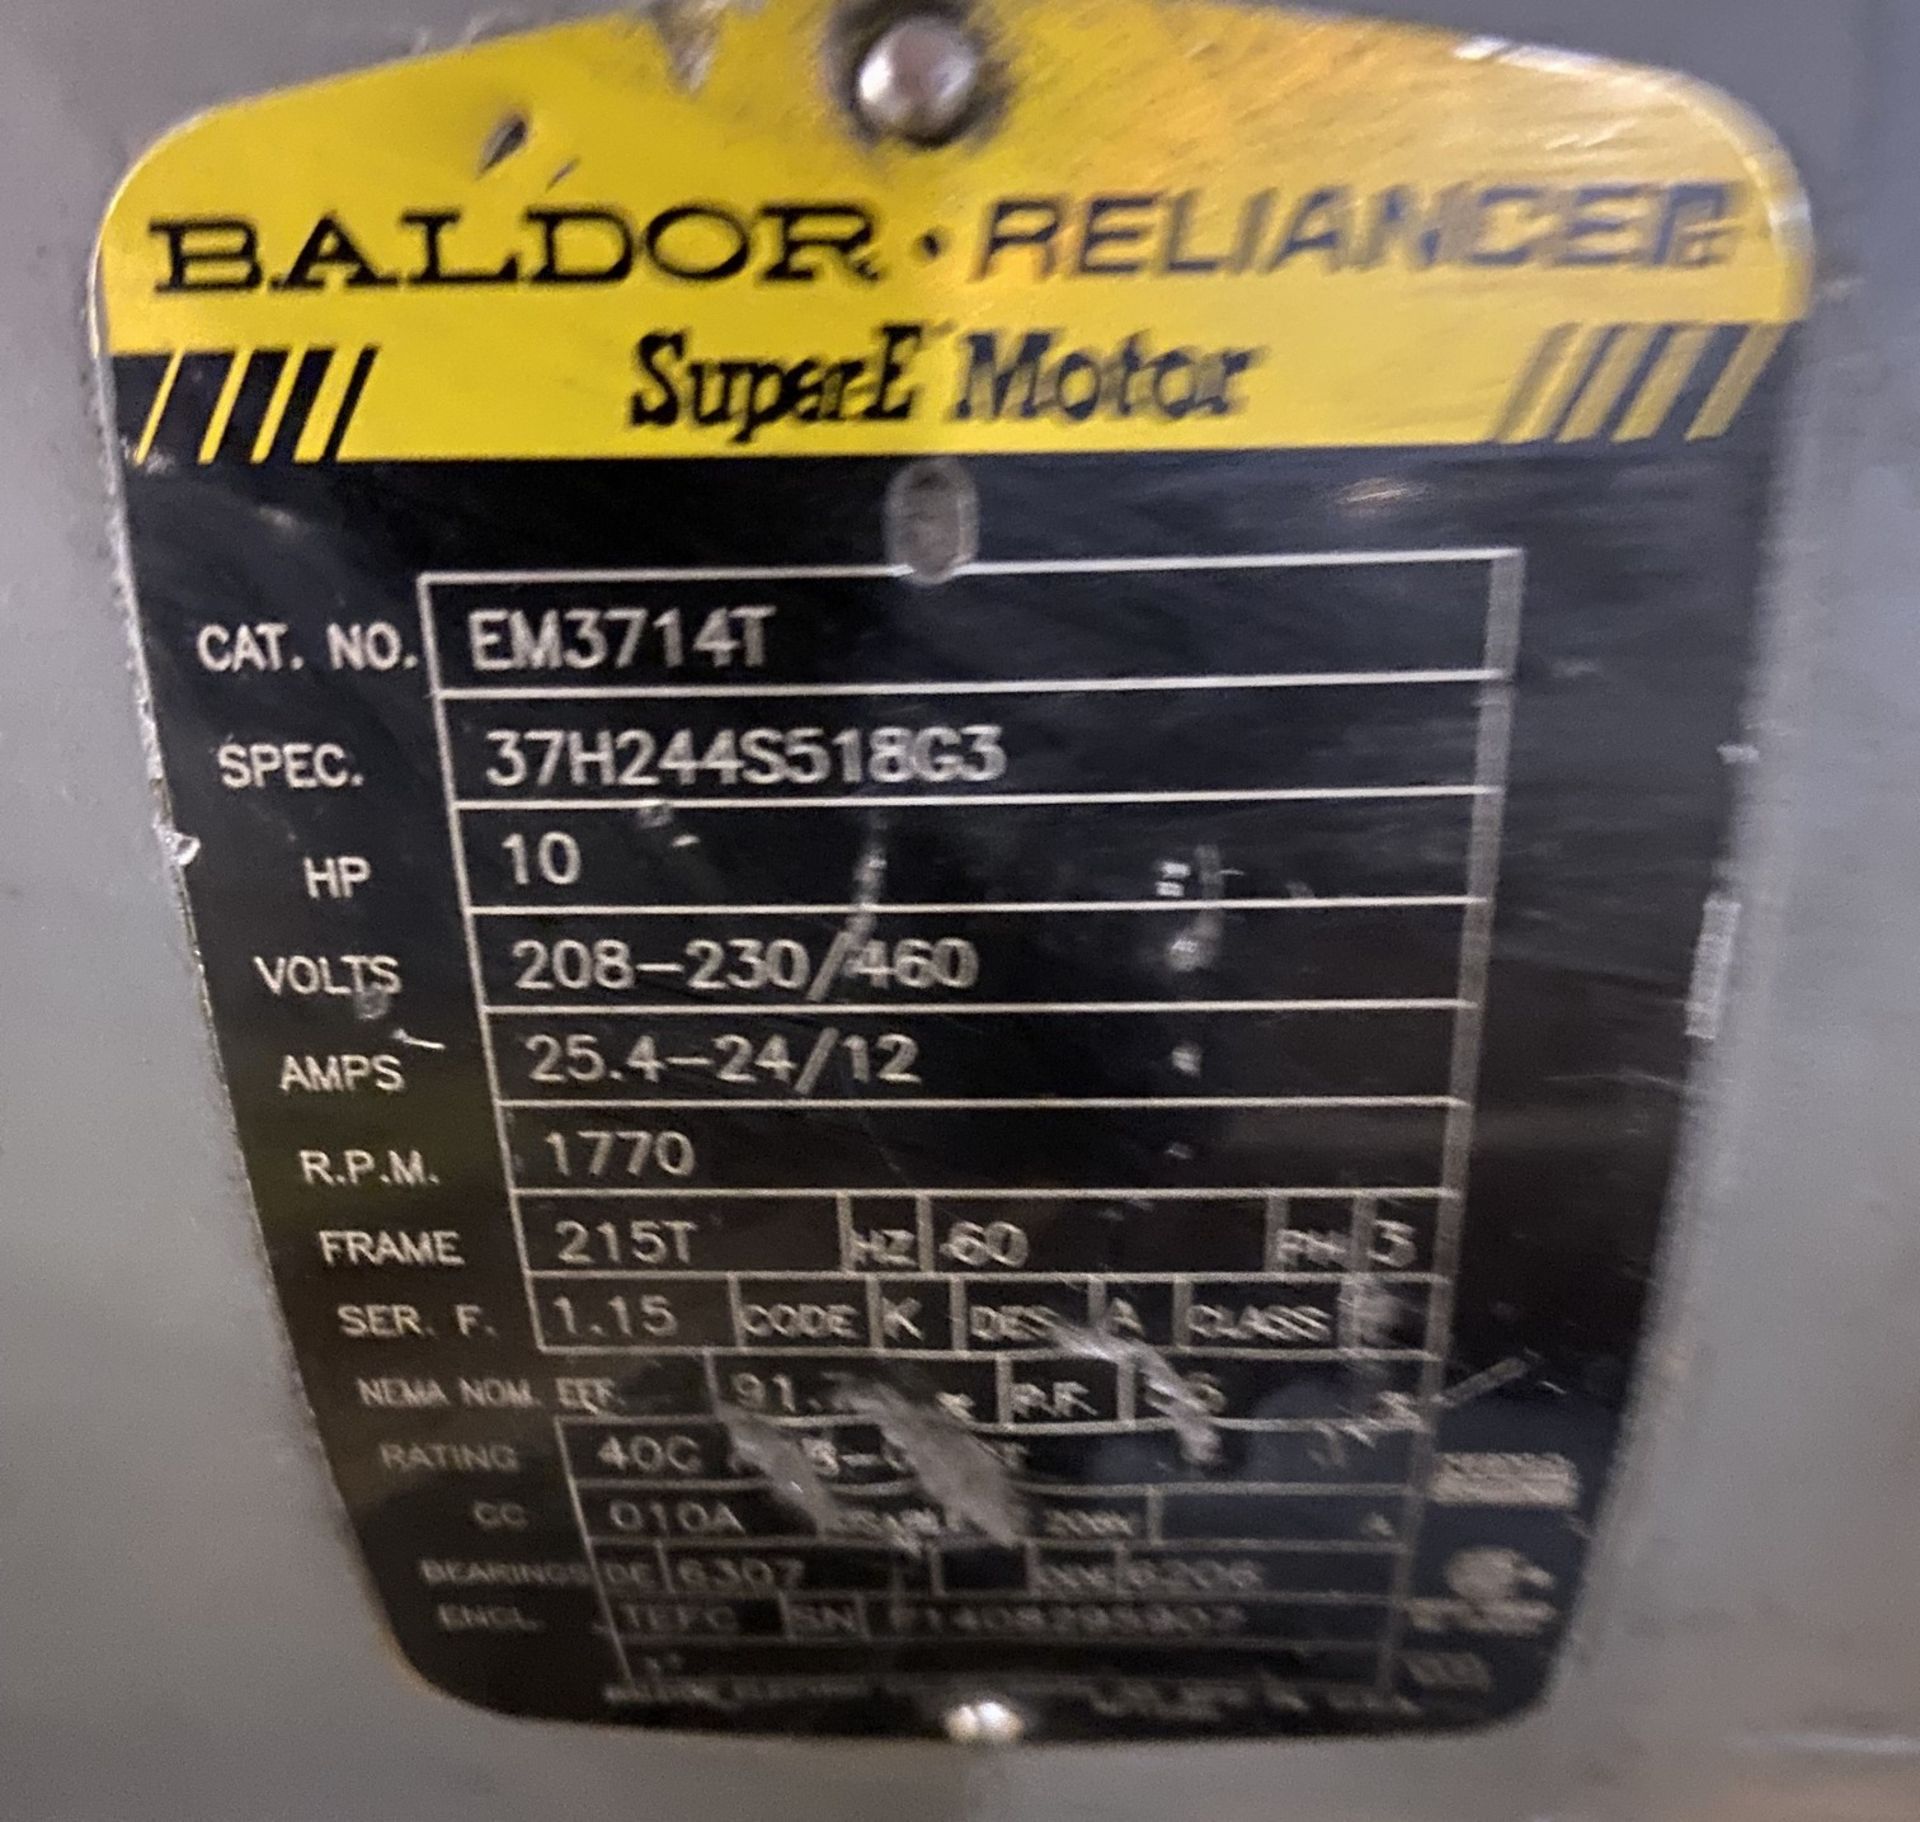 BALDOR 10HP ELECTRIC MOTOR, 1770 RPM - Image 2 of 2